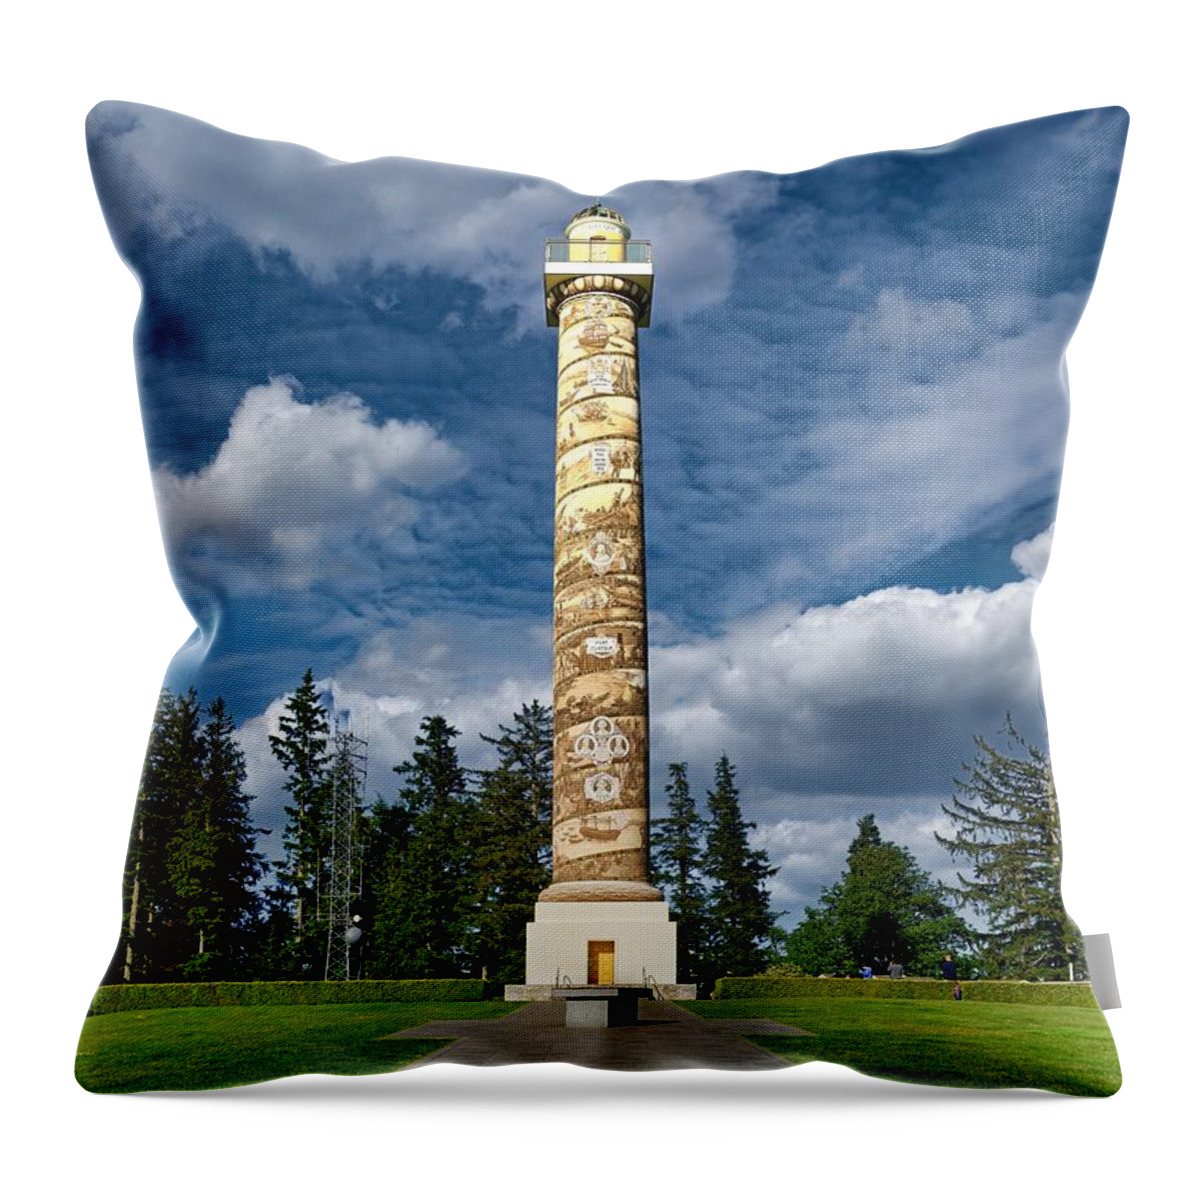 Astoria Column Throw Pillow featuring the photograph The Astoria Column by Mountain Dreams